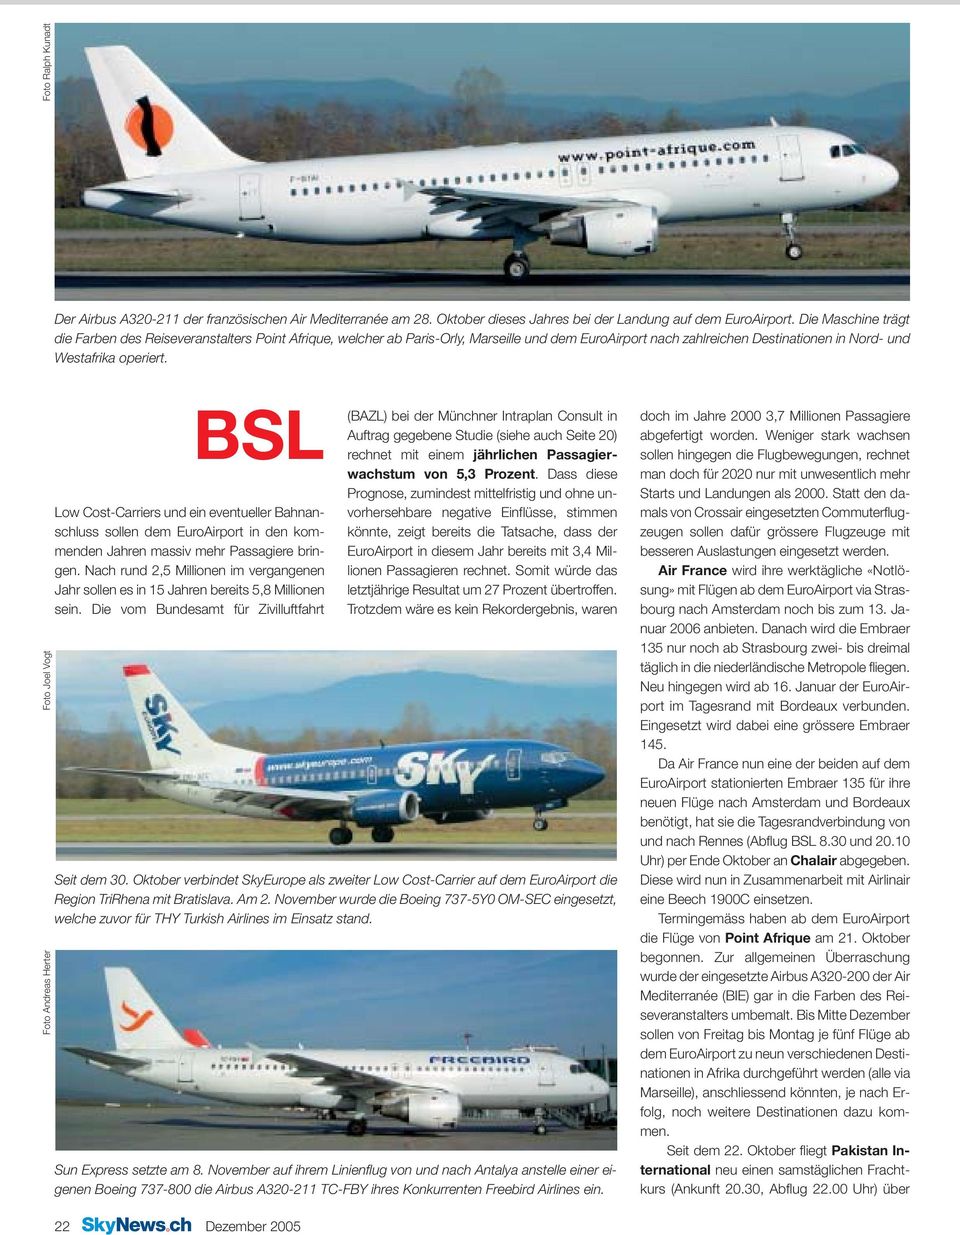 BSL Low Cost-Carriers und ein eventueller Bahnanschluss sollen dem EuroAirport in den kommenden Jahren massiv mehr Passagiere bringen.